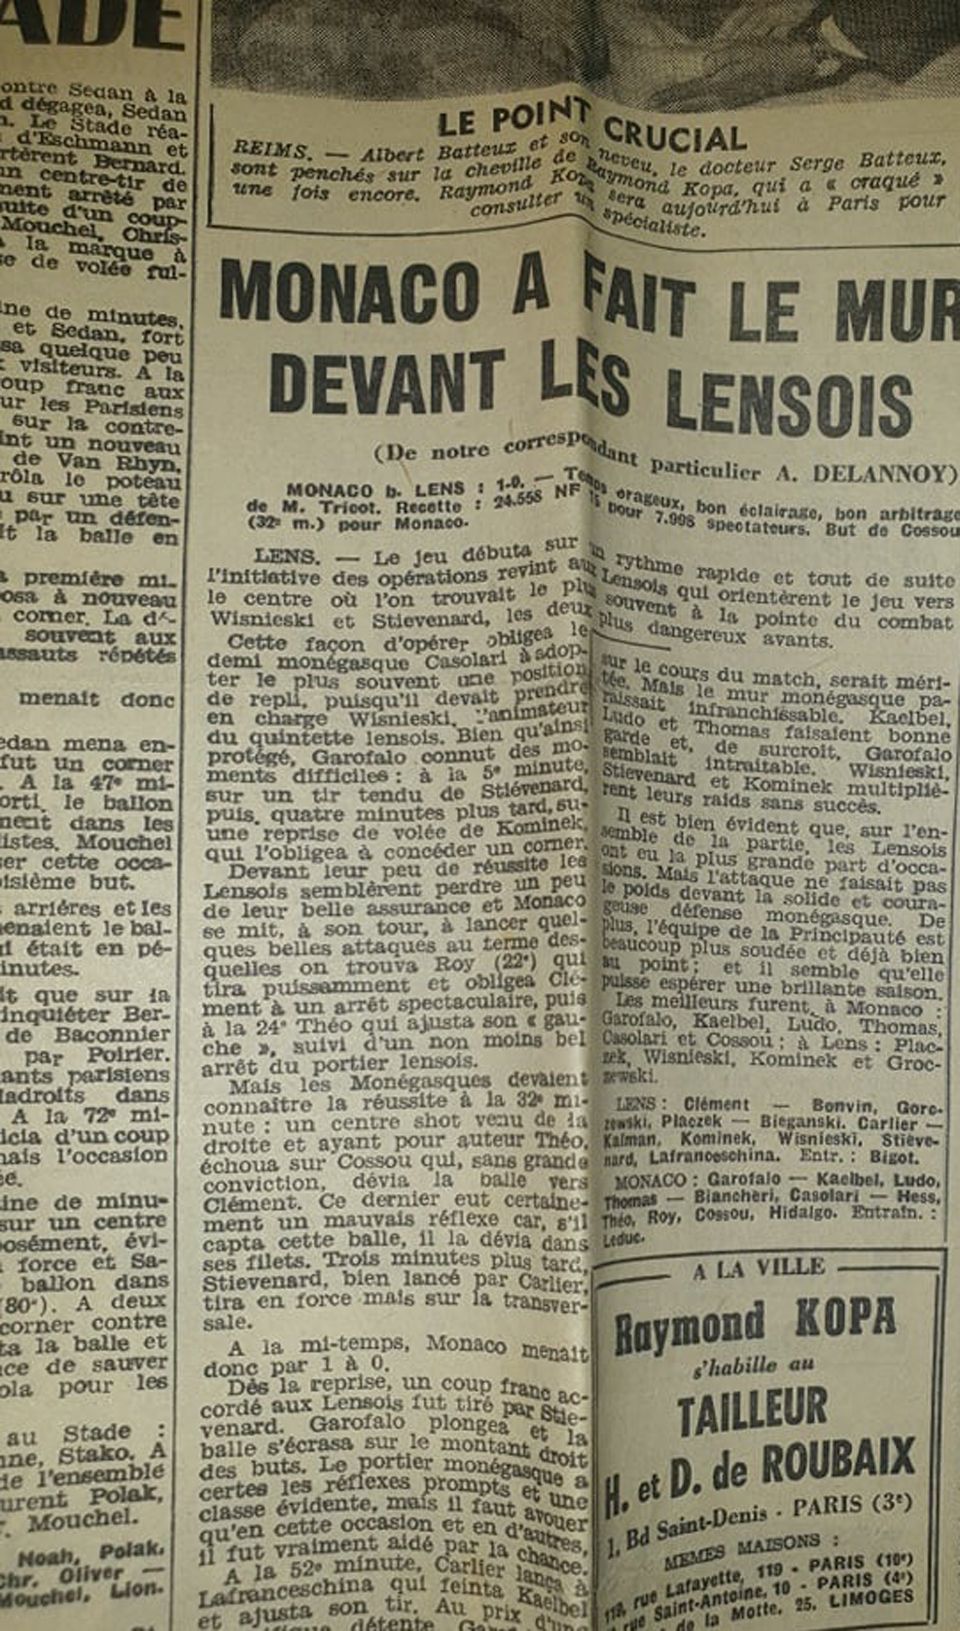 Az 1960 augusztusában játszott Lens–Monaco mérkőzésről a korabeli francia sajtóban megjelent tudósítás, Gerencséri neve Kalman formában szerepel